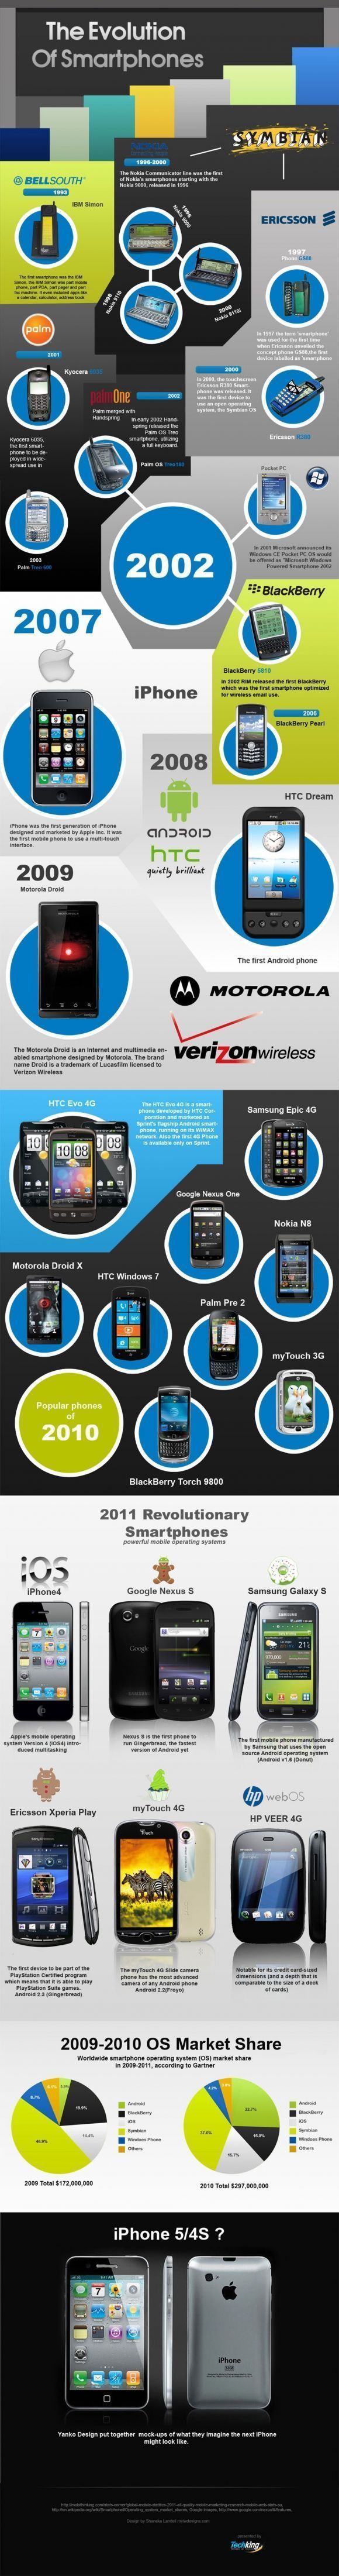 L'histoire des smartphones en 1 image #2